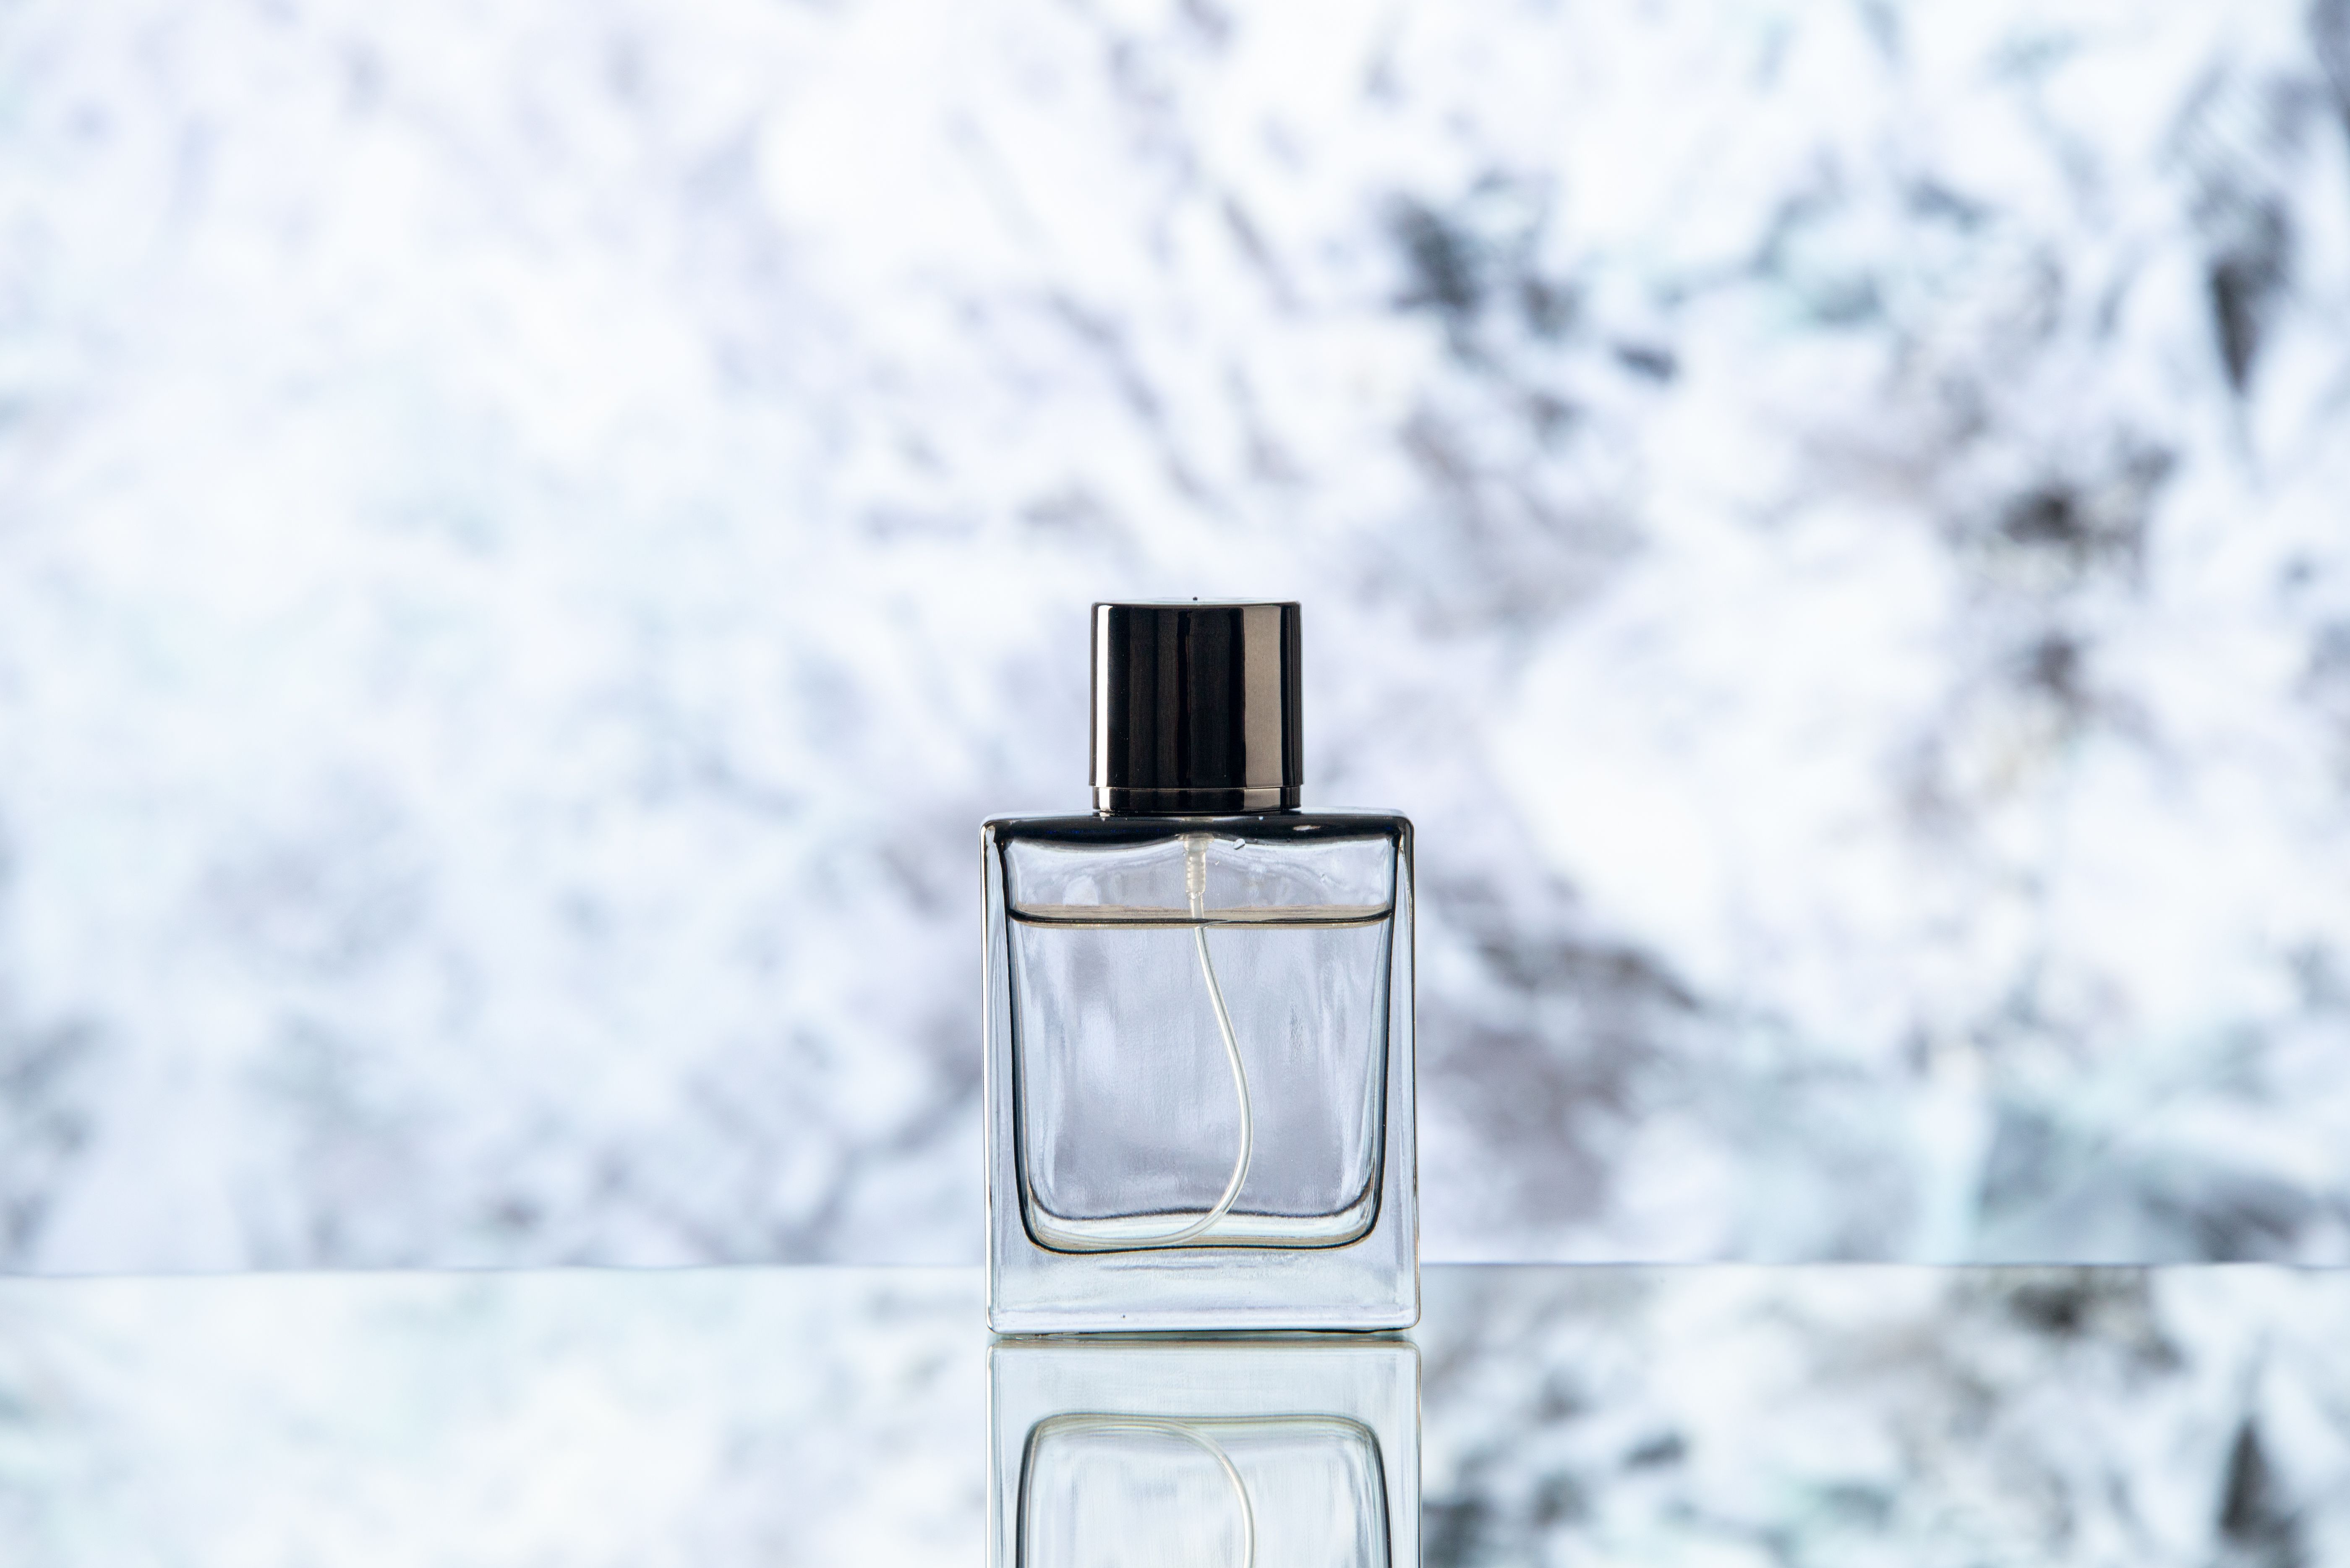 Залежно від сезону правила користування парфумами можуть відрізнятися